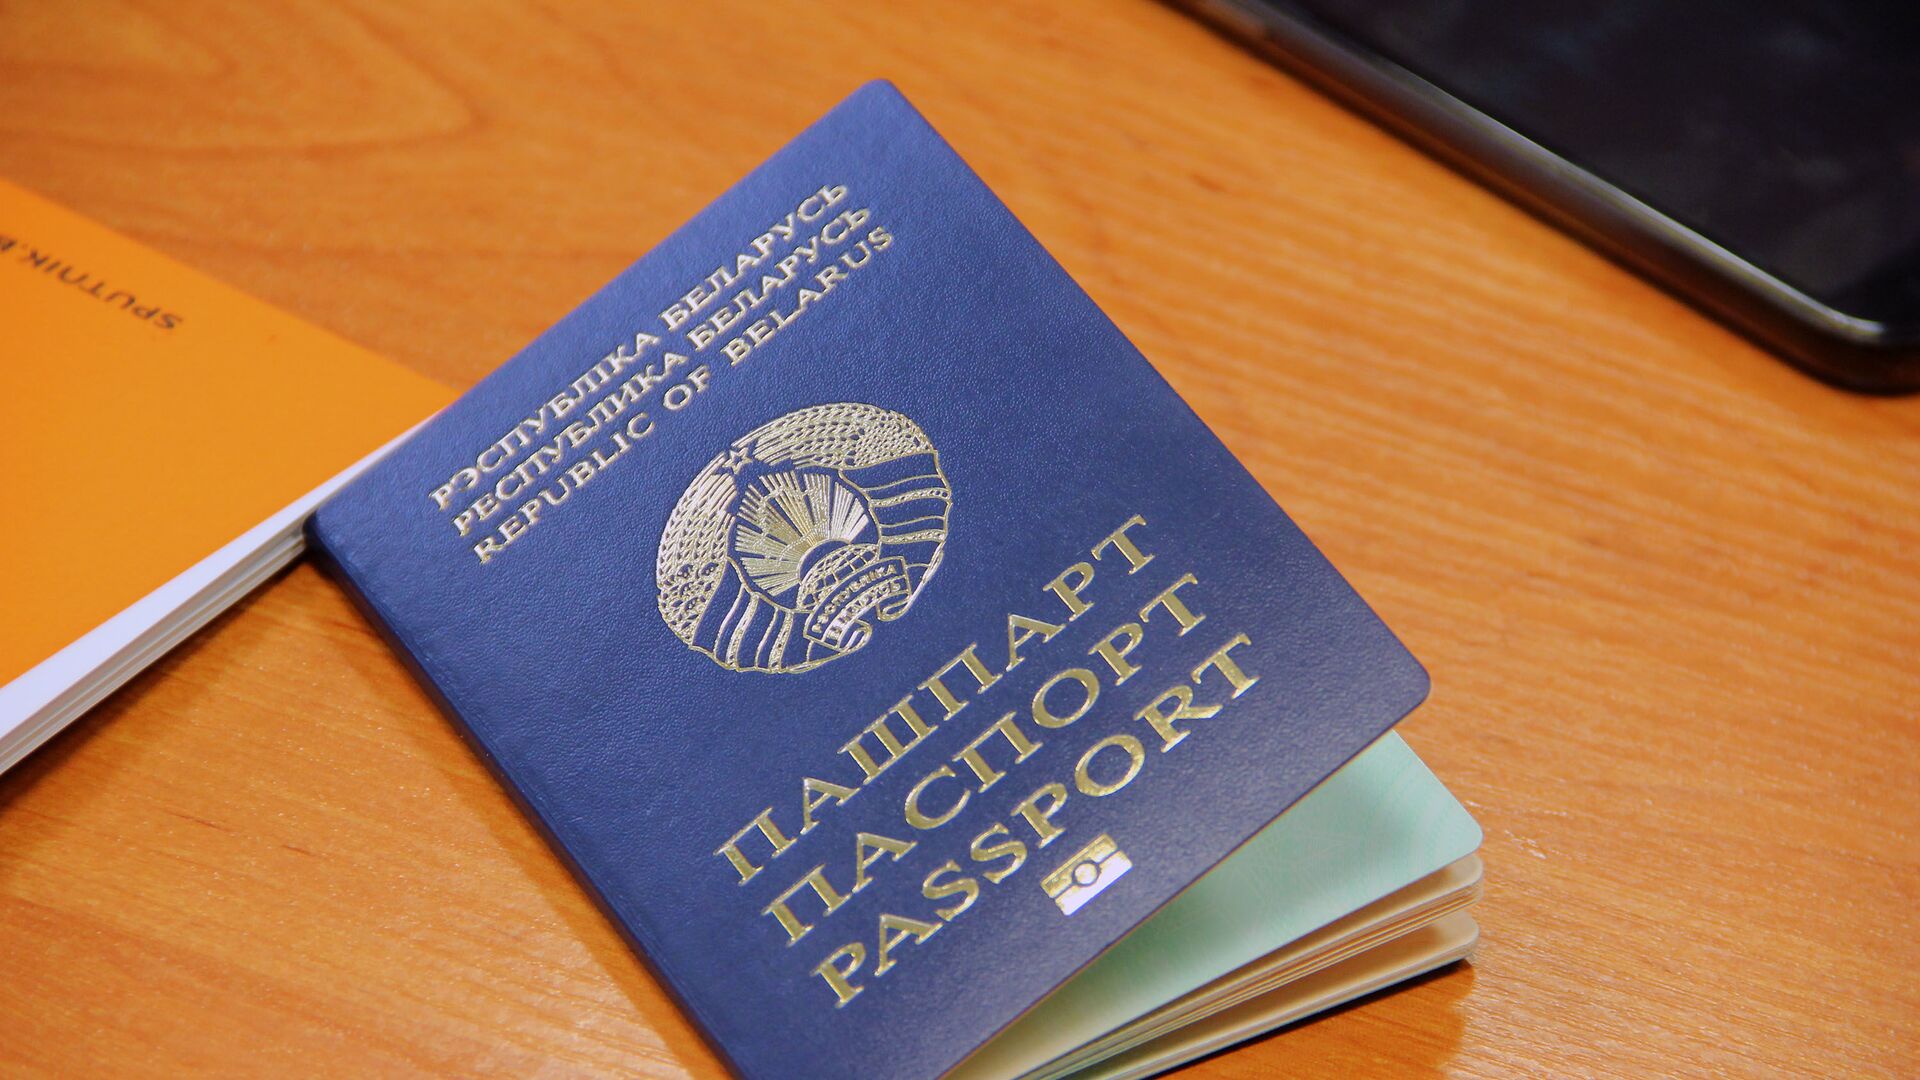 Биометрический паспорт предназначен для выезда за границу - Sputnik Беларусь, 1920, 31.12.2021